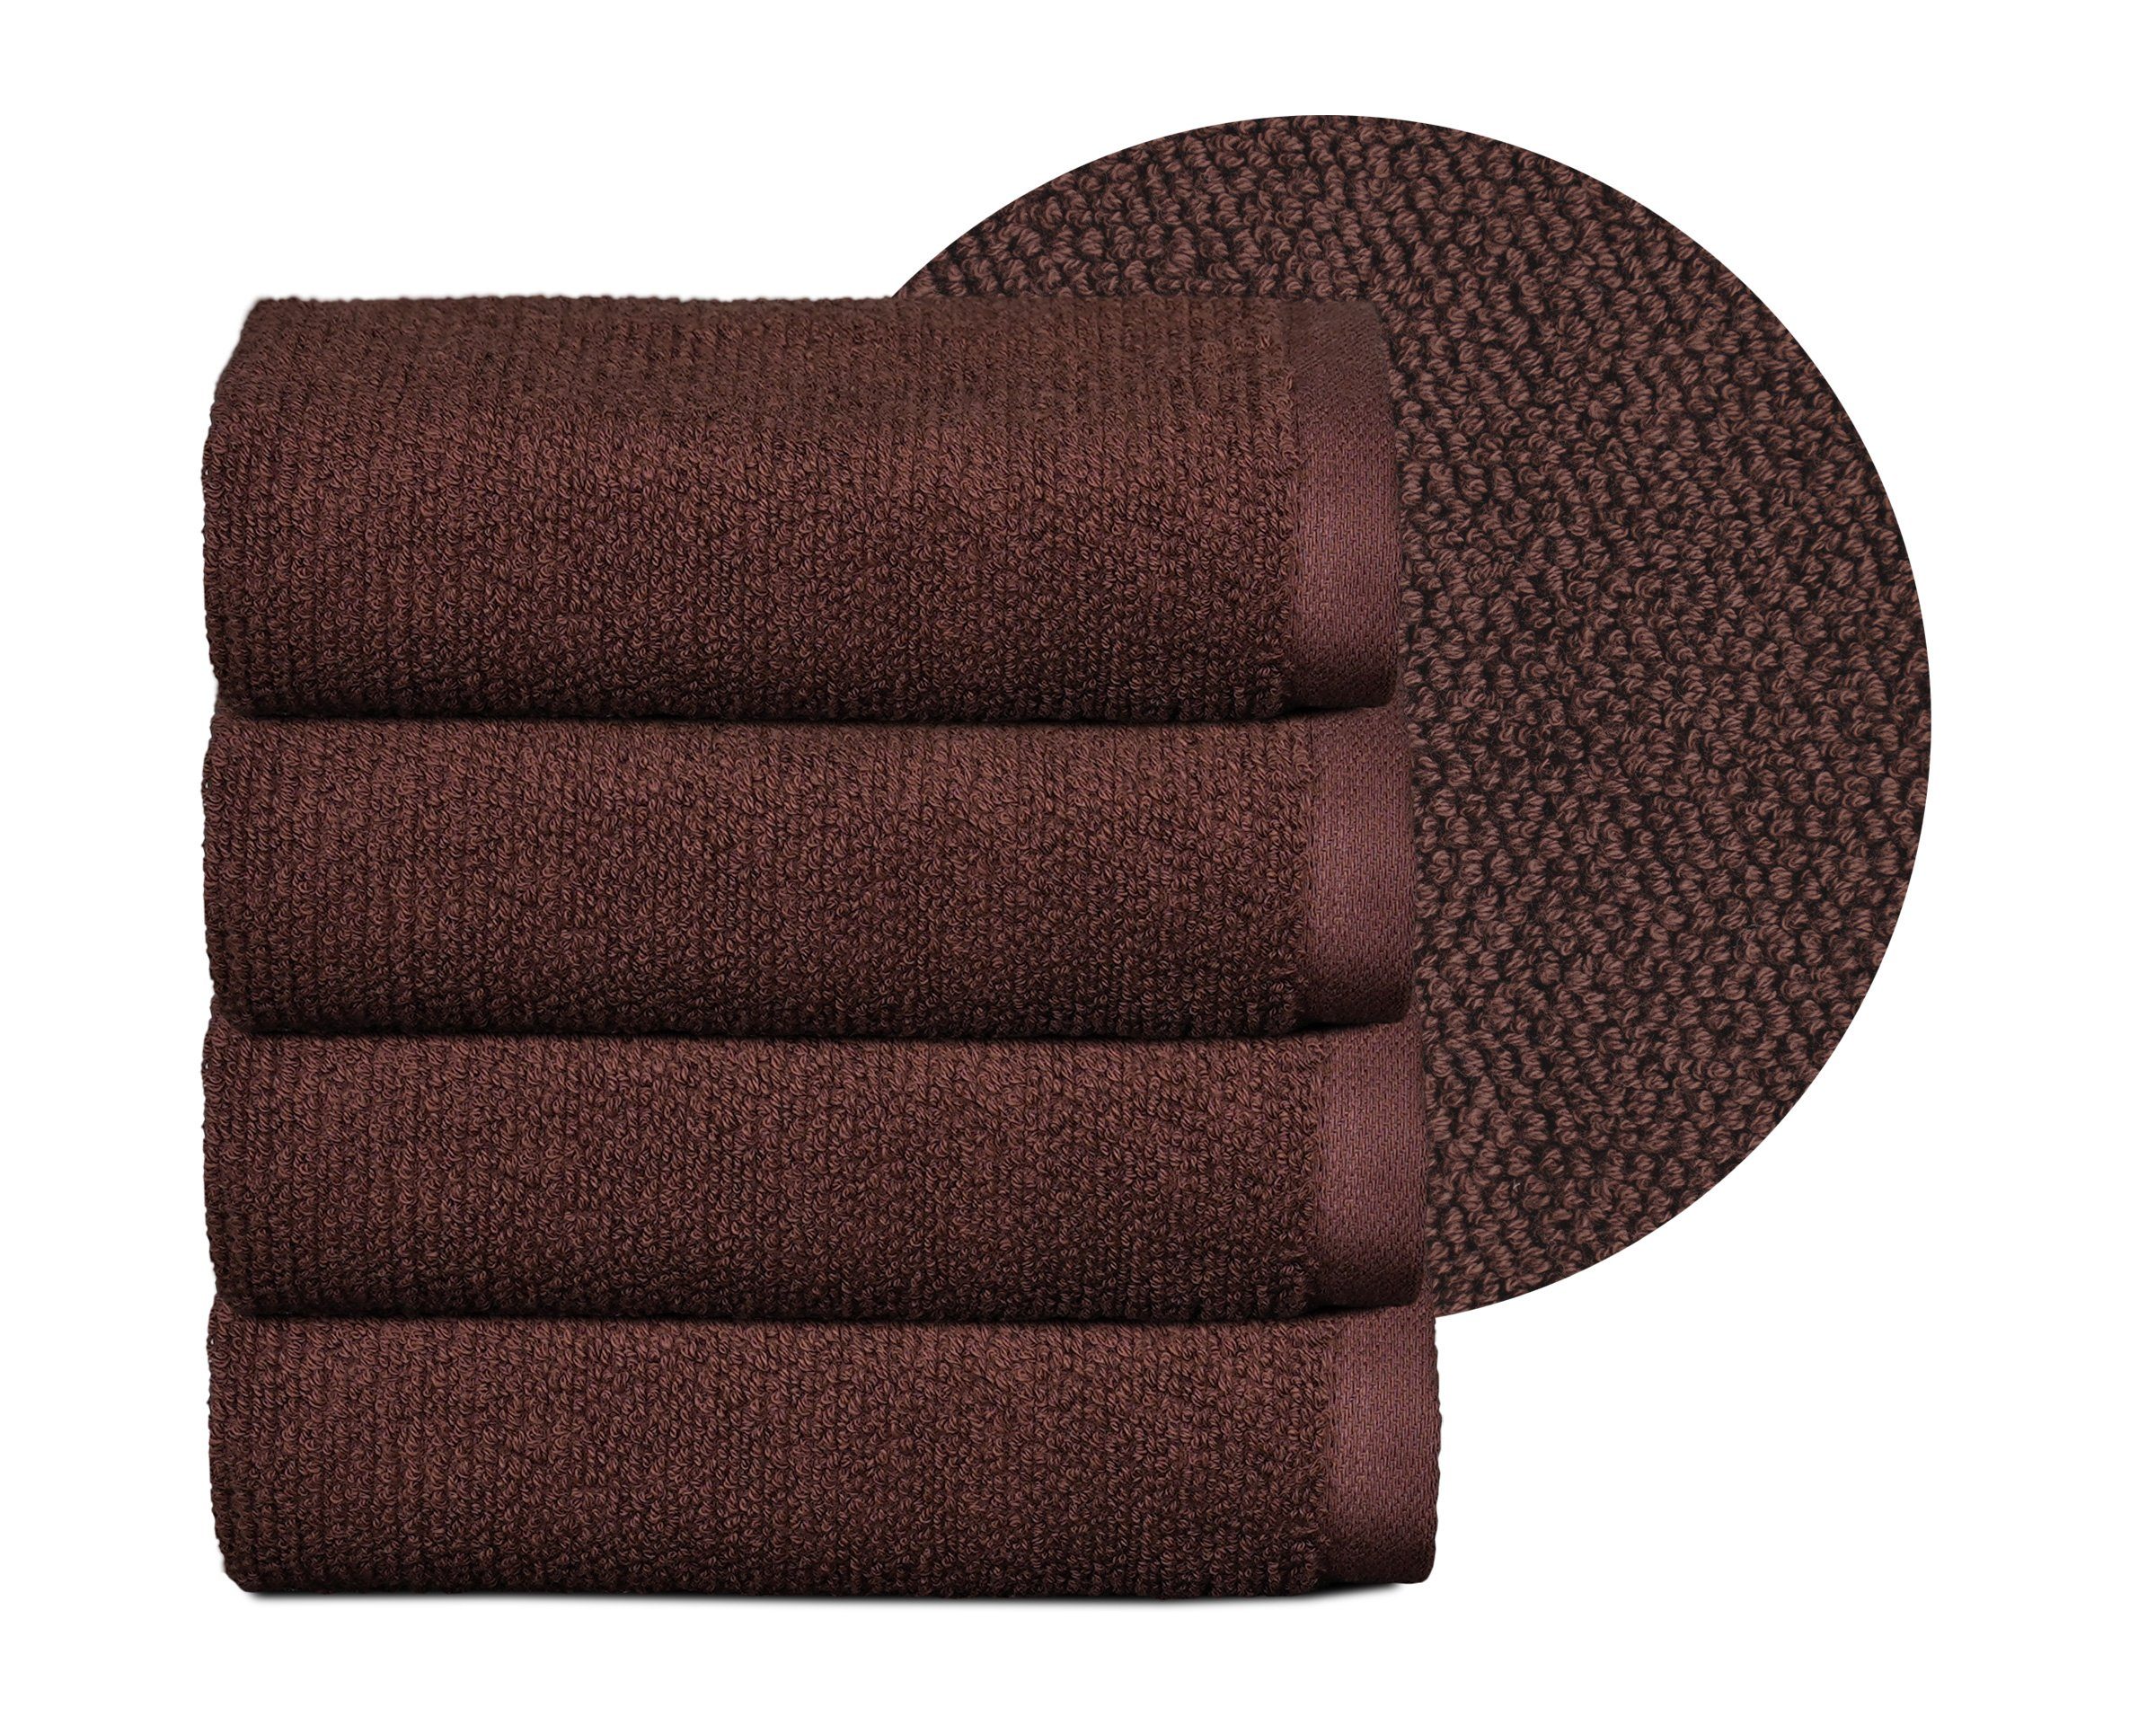 Baumwolle Dunkelbraun aus Frottier Premium 100% Beautex (Multischlaufen-Optik, 550g/m) Set Made Set, Set Frottier, Europe, Handtuch Handtuch in